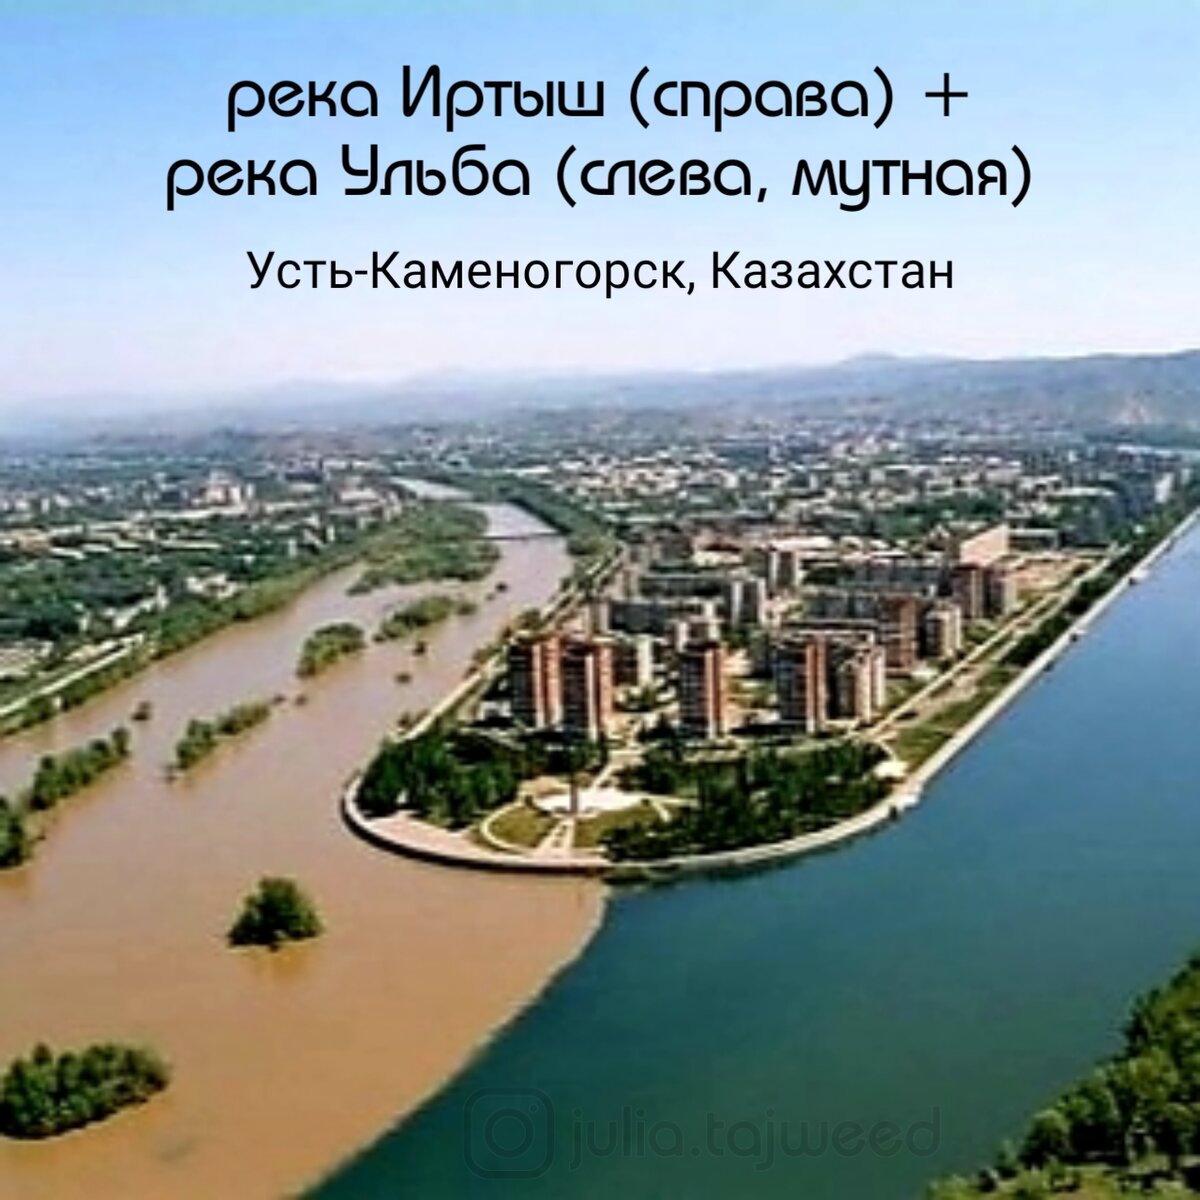 река ульба в восточном казахстане